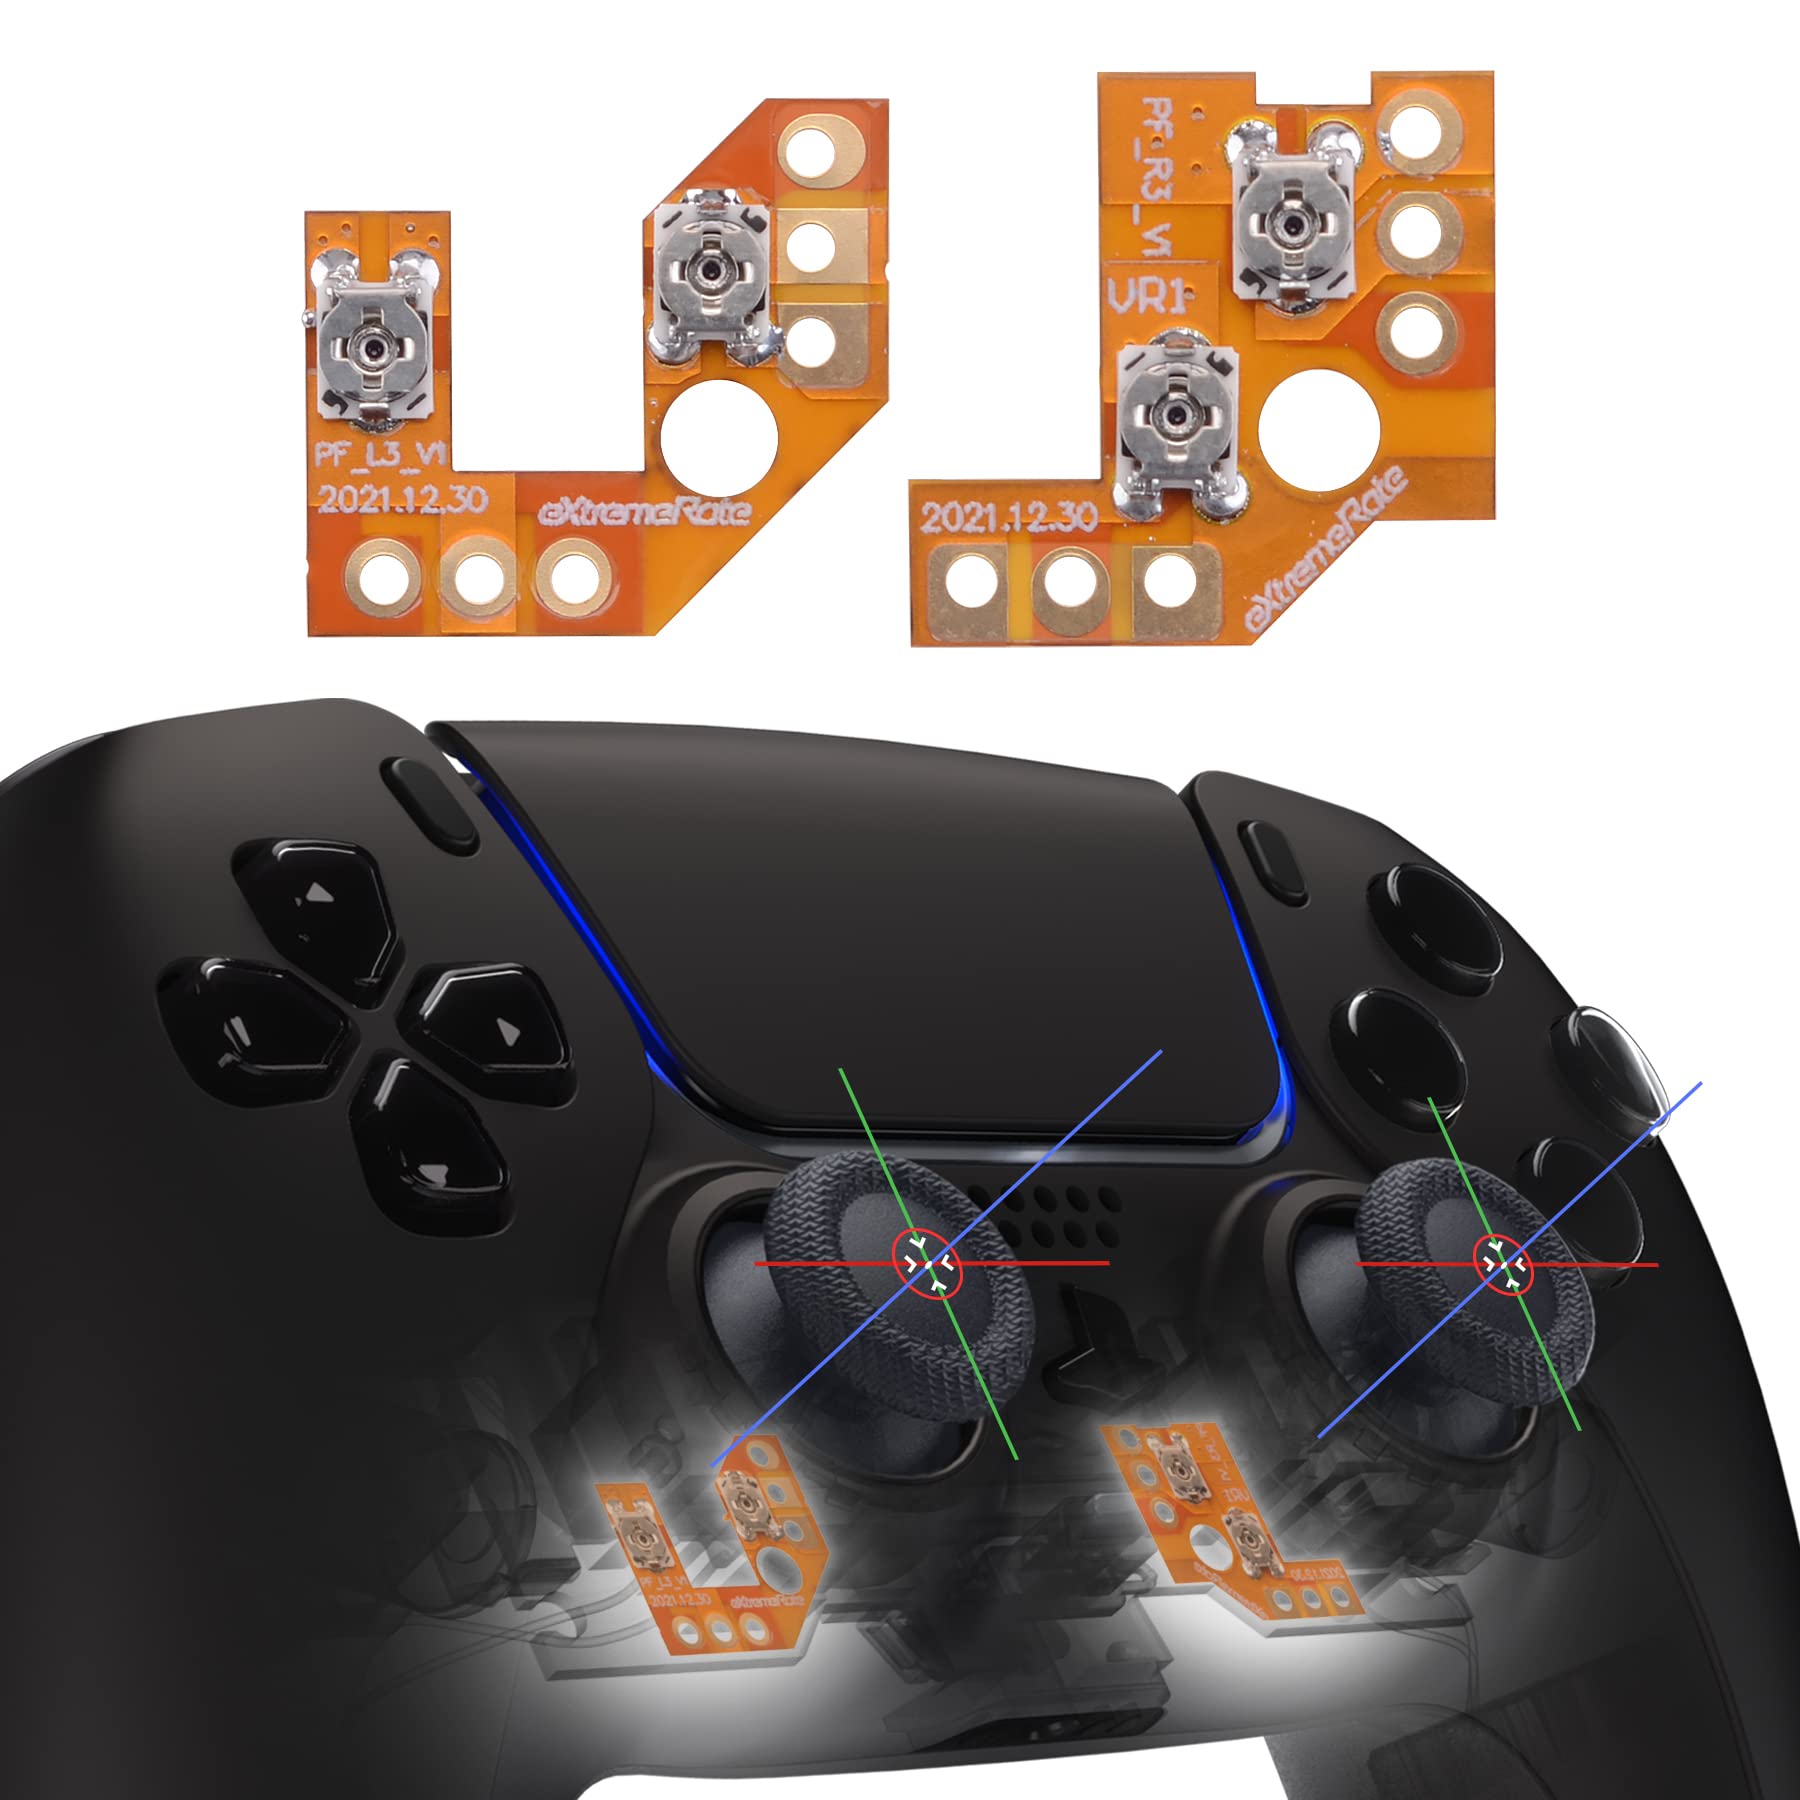 Die PS3 Dualshock 3 Controller haben oft Probleme mit den Analog-Sticks.
Es gibt verschiedene Möglichkeiten, um das Analog-Stick Problem zu beheben.